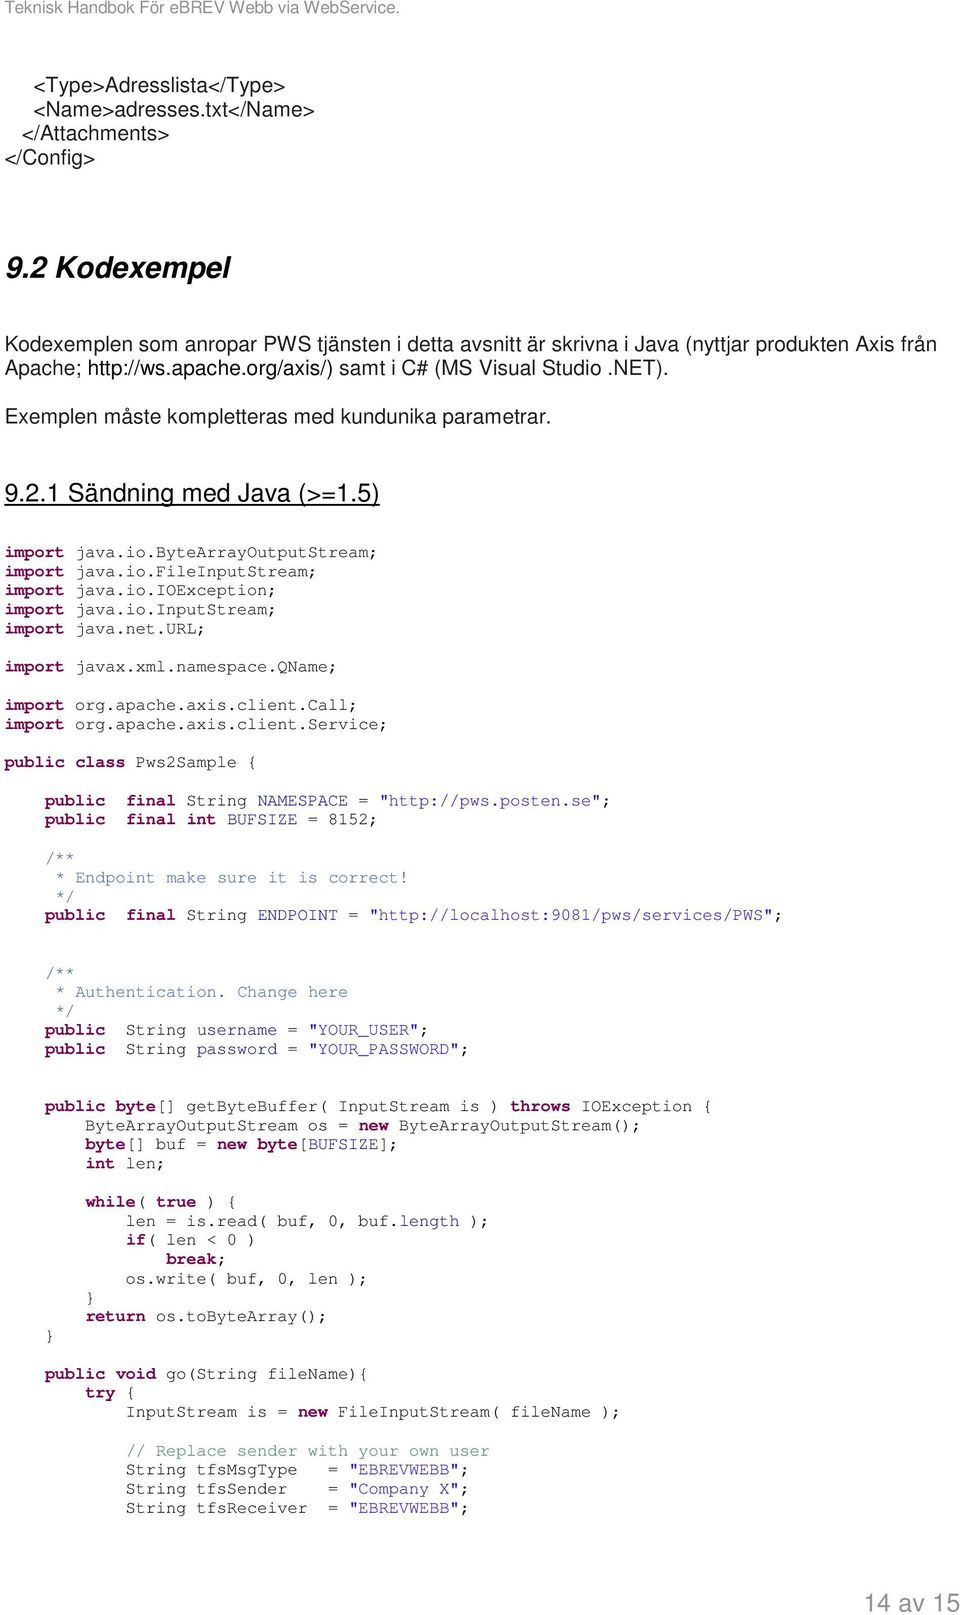 Exemplen måste kompletteras med kundunika parametrar. 9.2.1 Sändning med Java (>=1.5) import java.io.bytearrayoutputstream; import java.io.fileinputstream; import java.io.ioexception; import java.io.inputstream; import java.net.